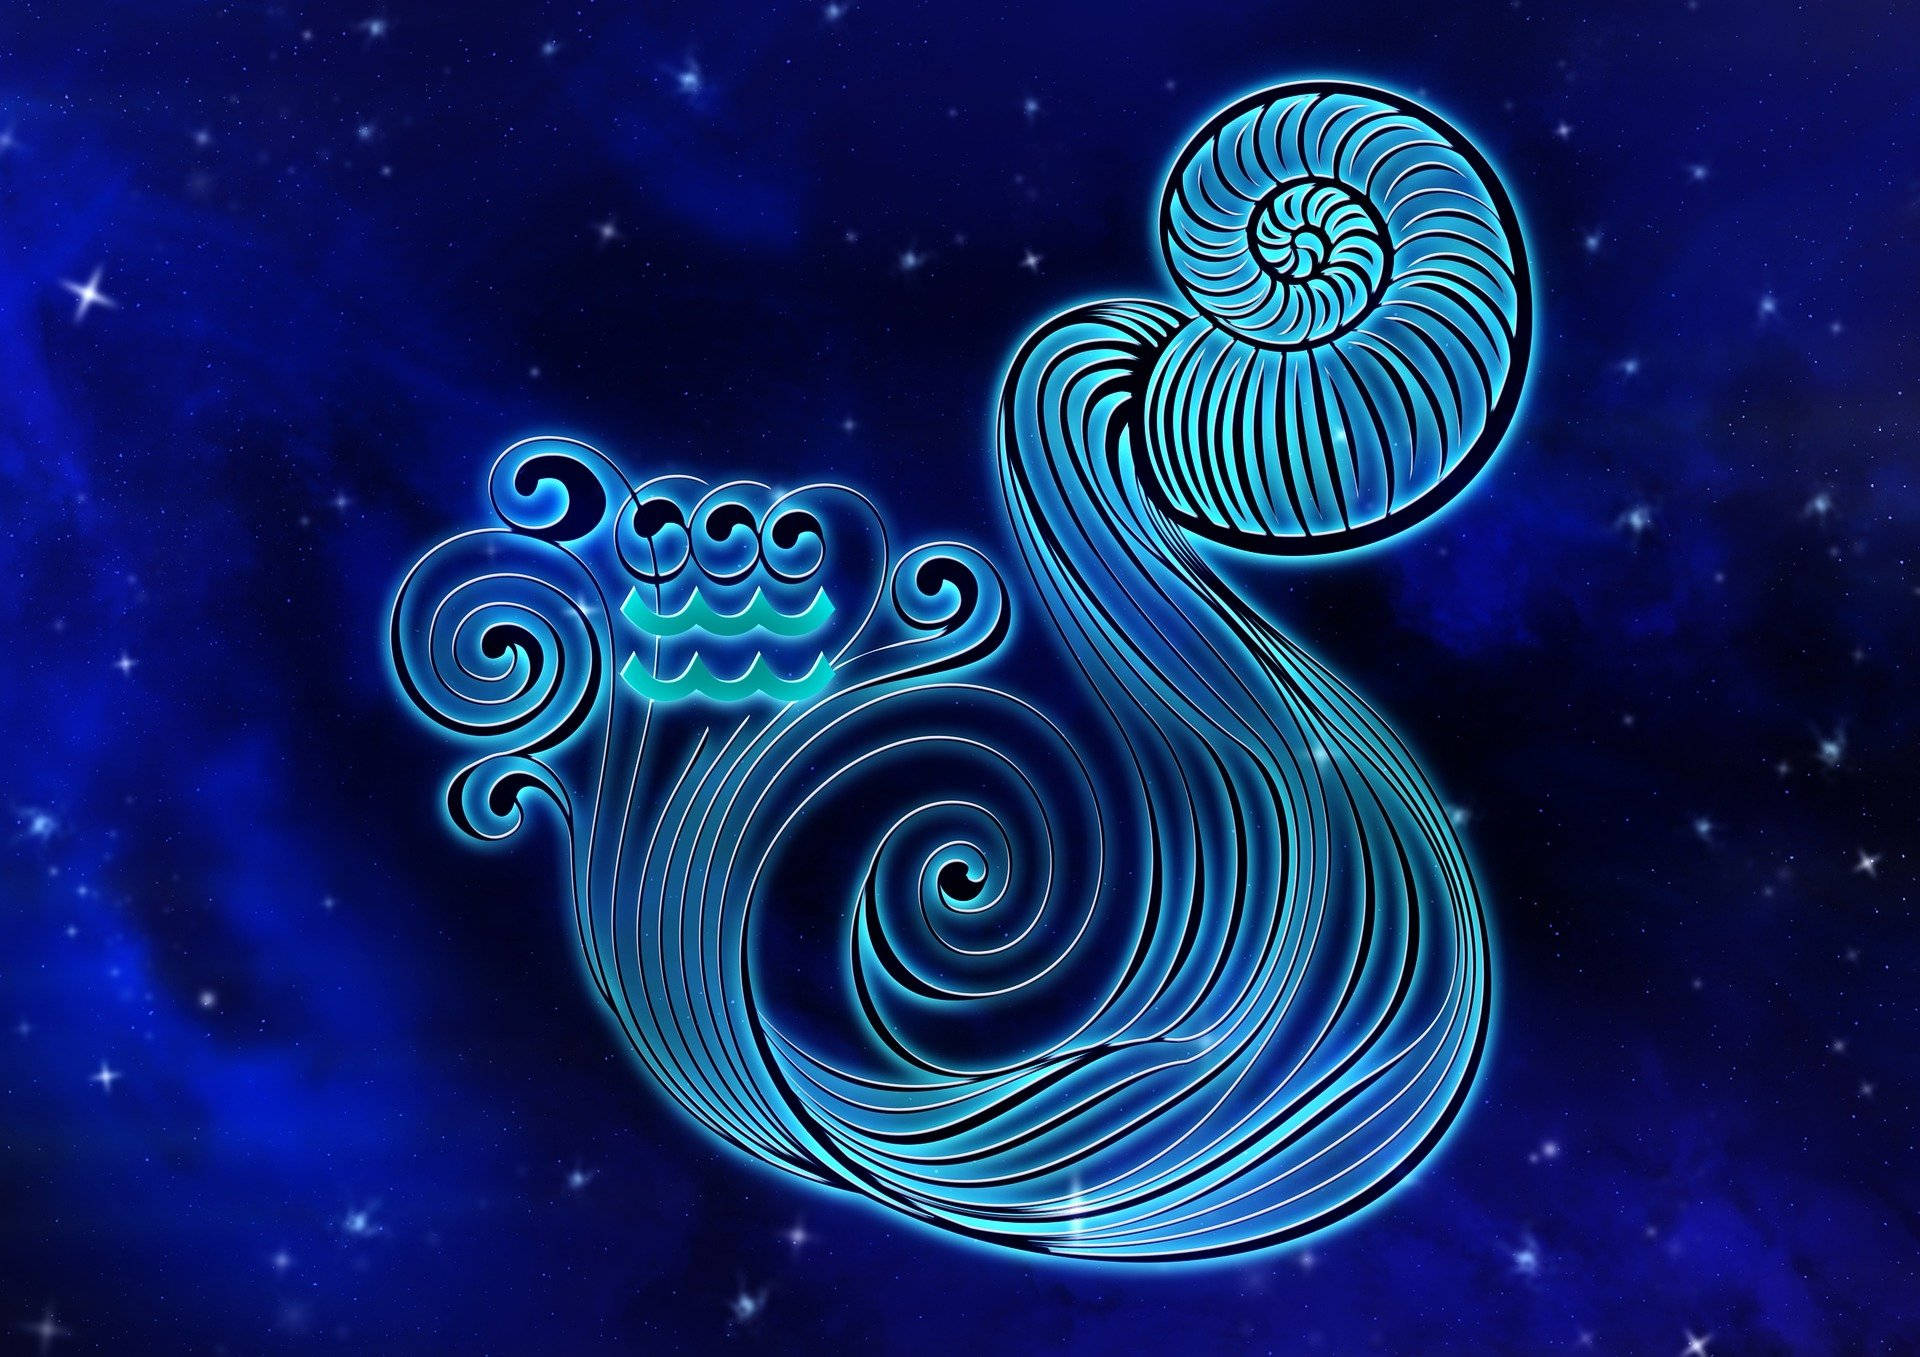 Caption: Elegant and adorable Aquarius symbol against a starry sky backdrop. Wallpaper